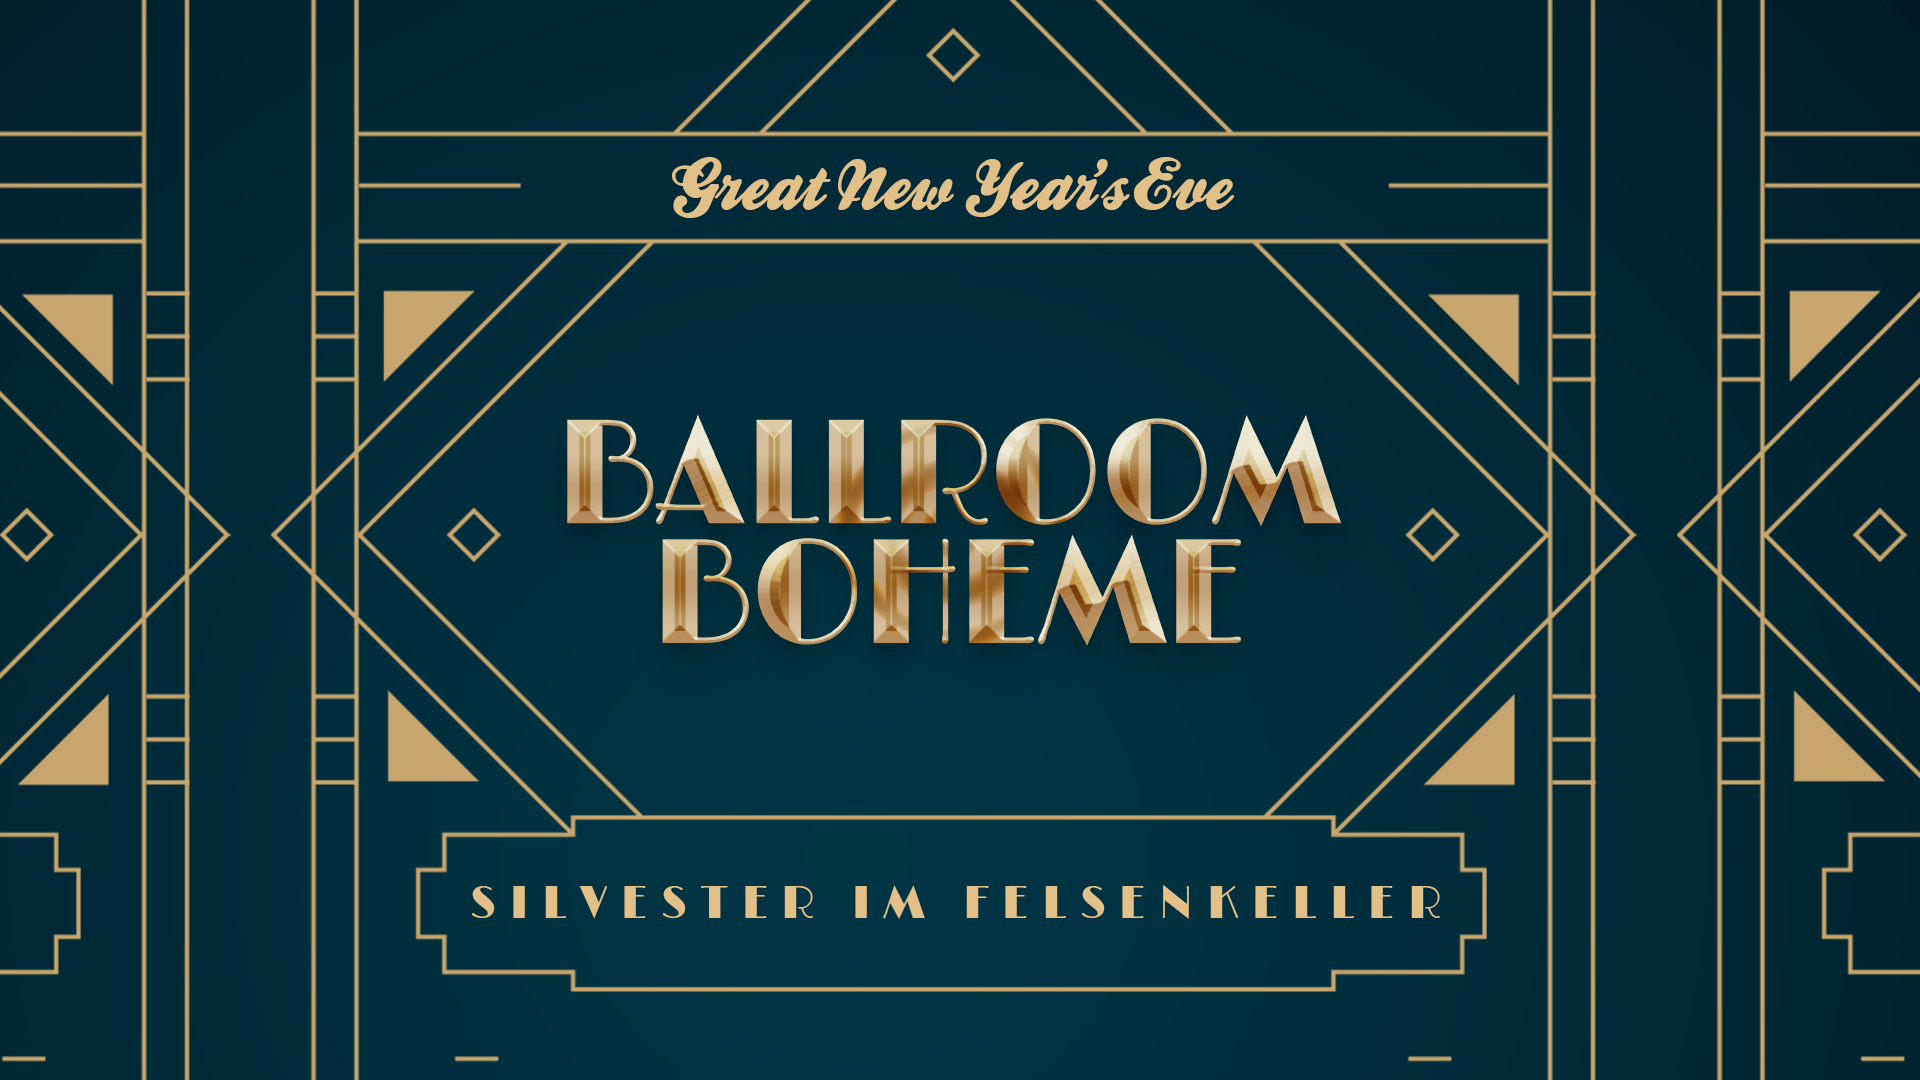 Ballroom Boheme - Silvester im Felsenkeller